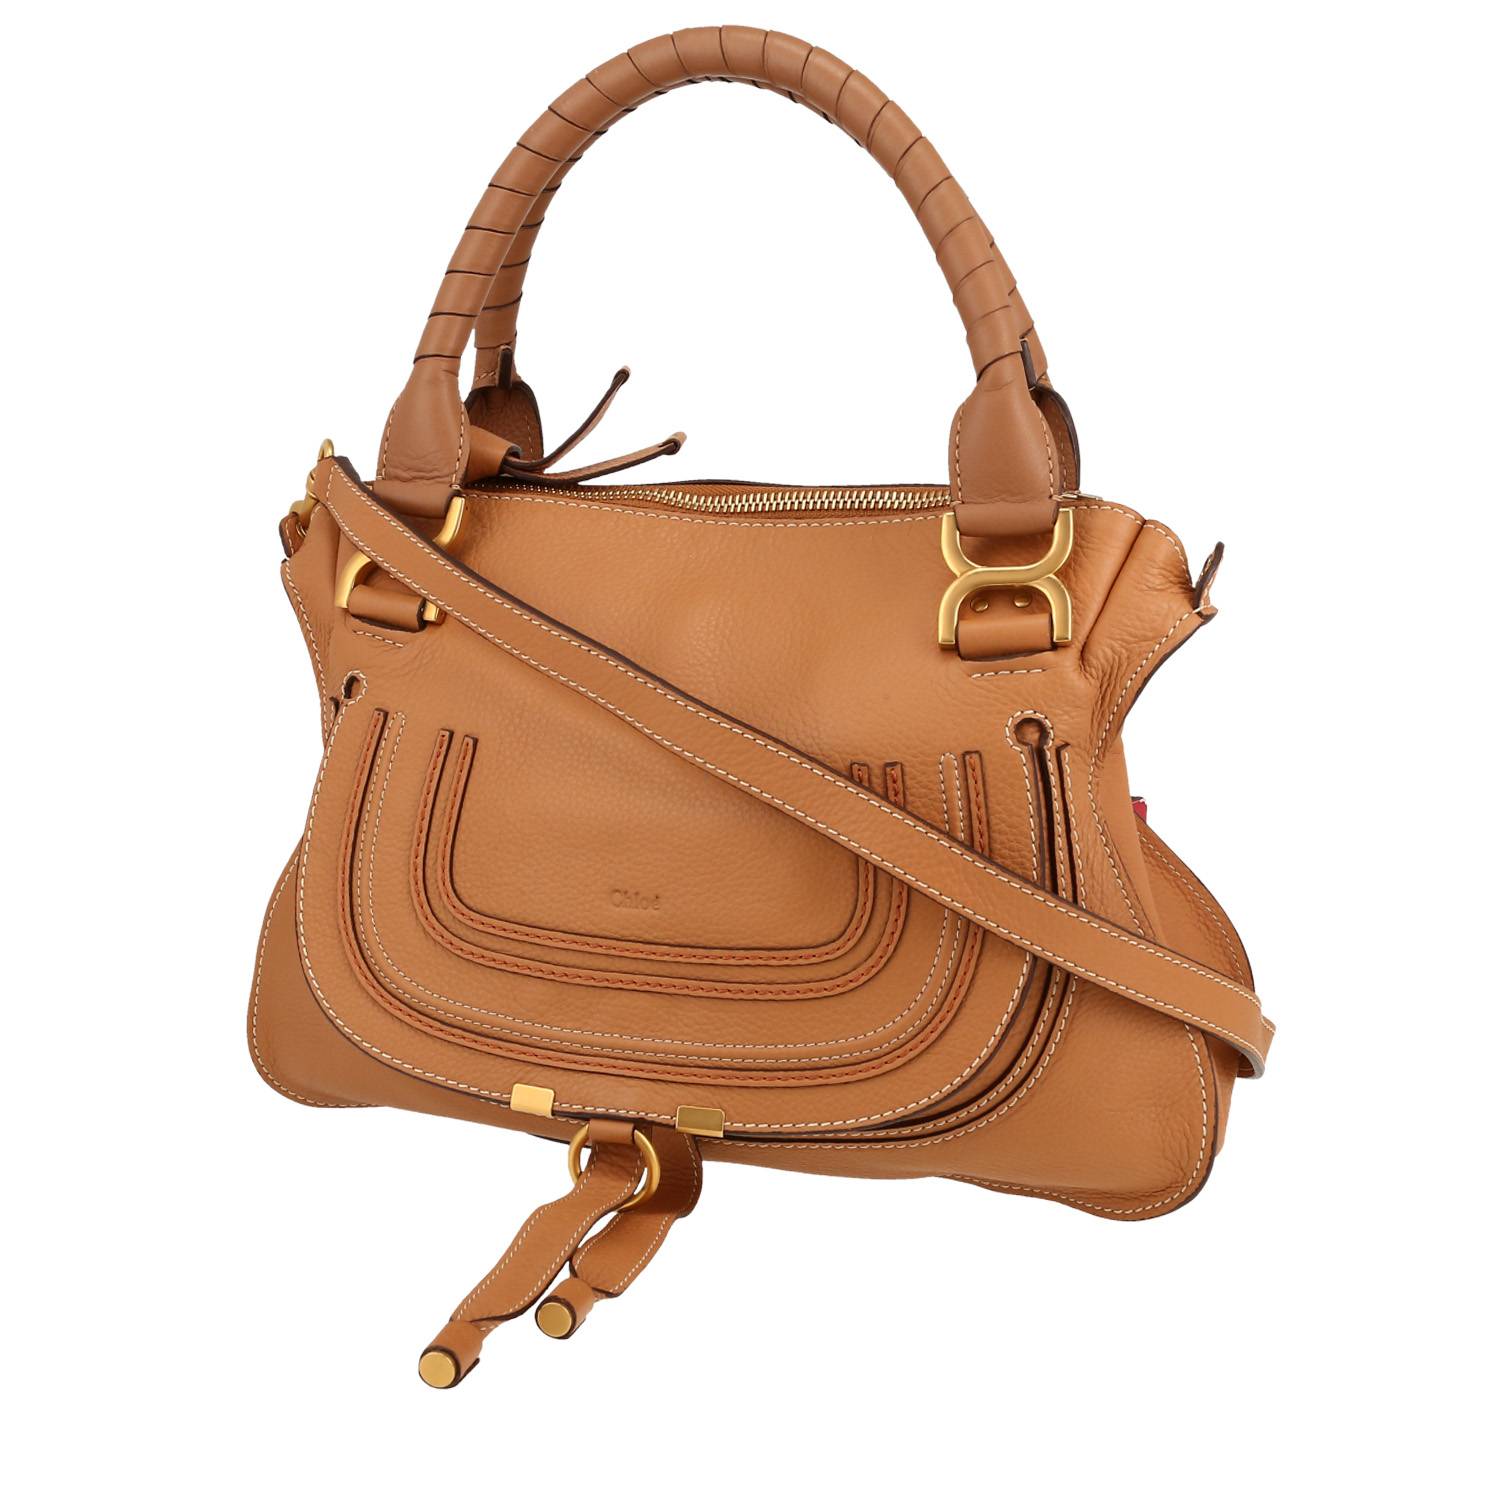 Marcie Handbag In Brown Leather